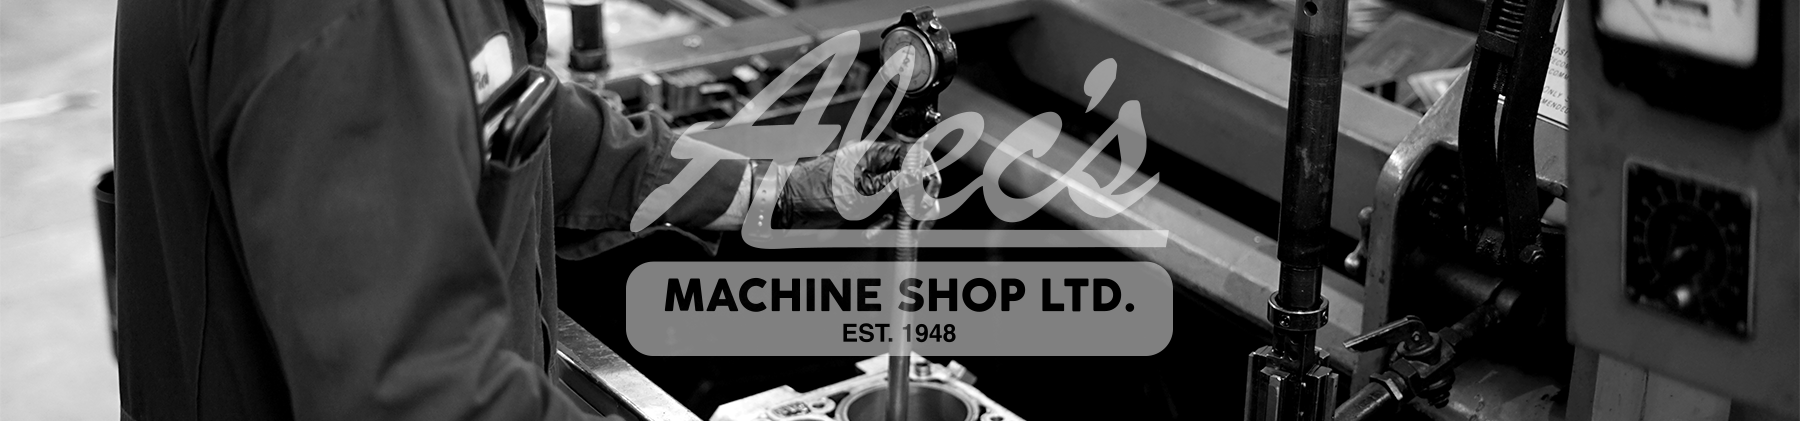 Alec's Machine Shop LTD. - Since 1948